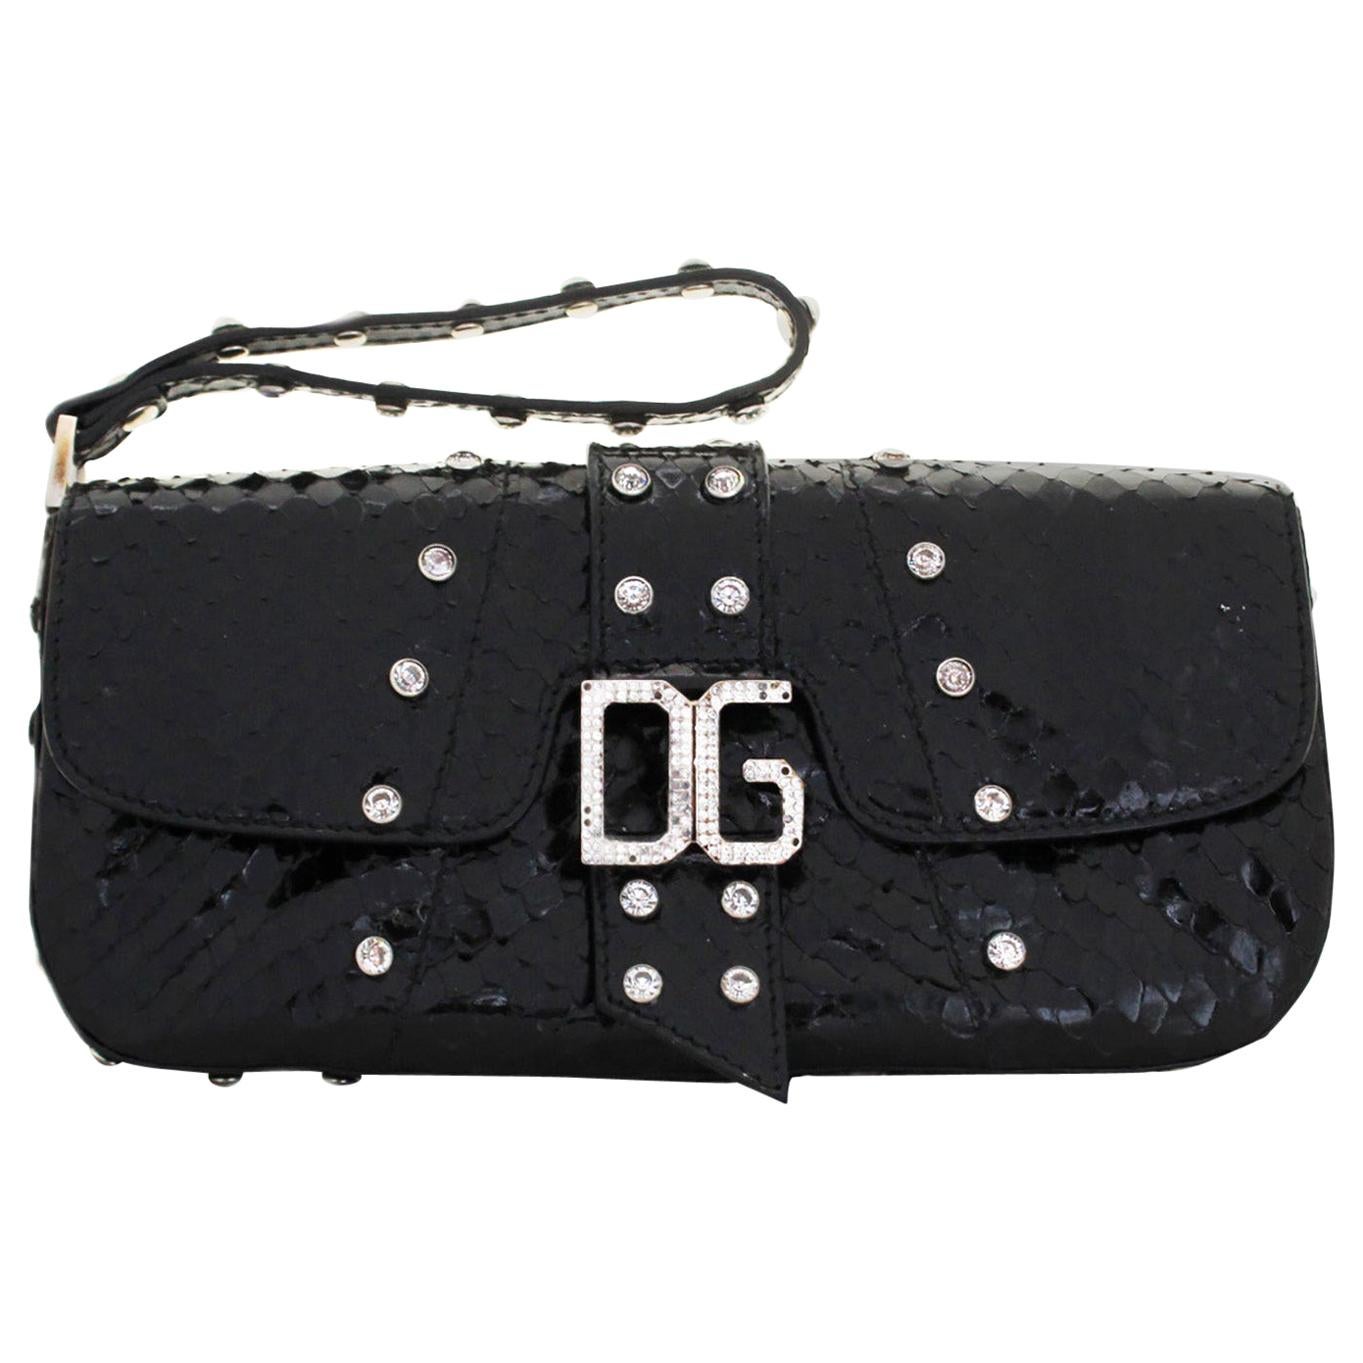 Dolce & Gabbana Black Python Wristlet W/ Crystal Studs & Crystal DG at Front  For Sale